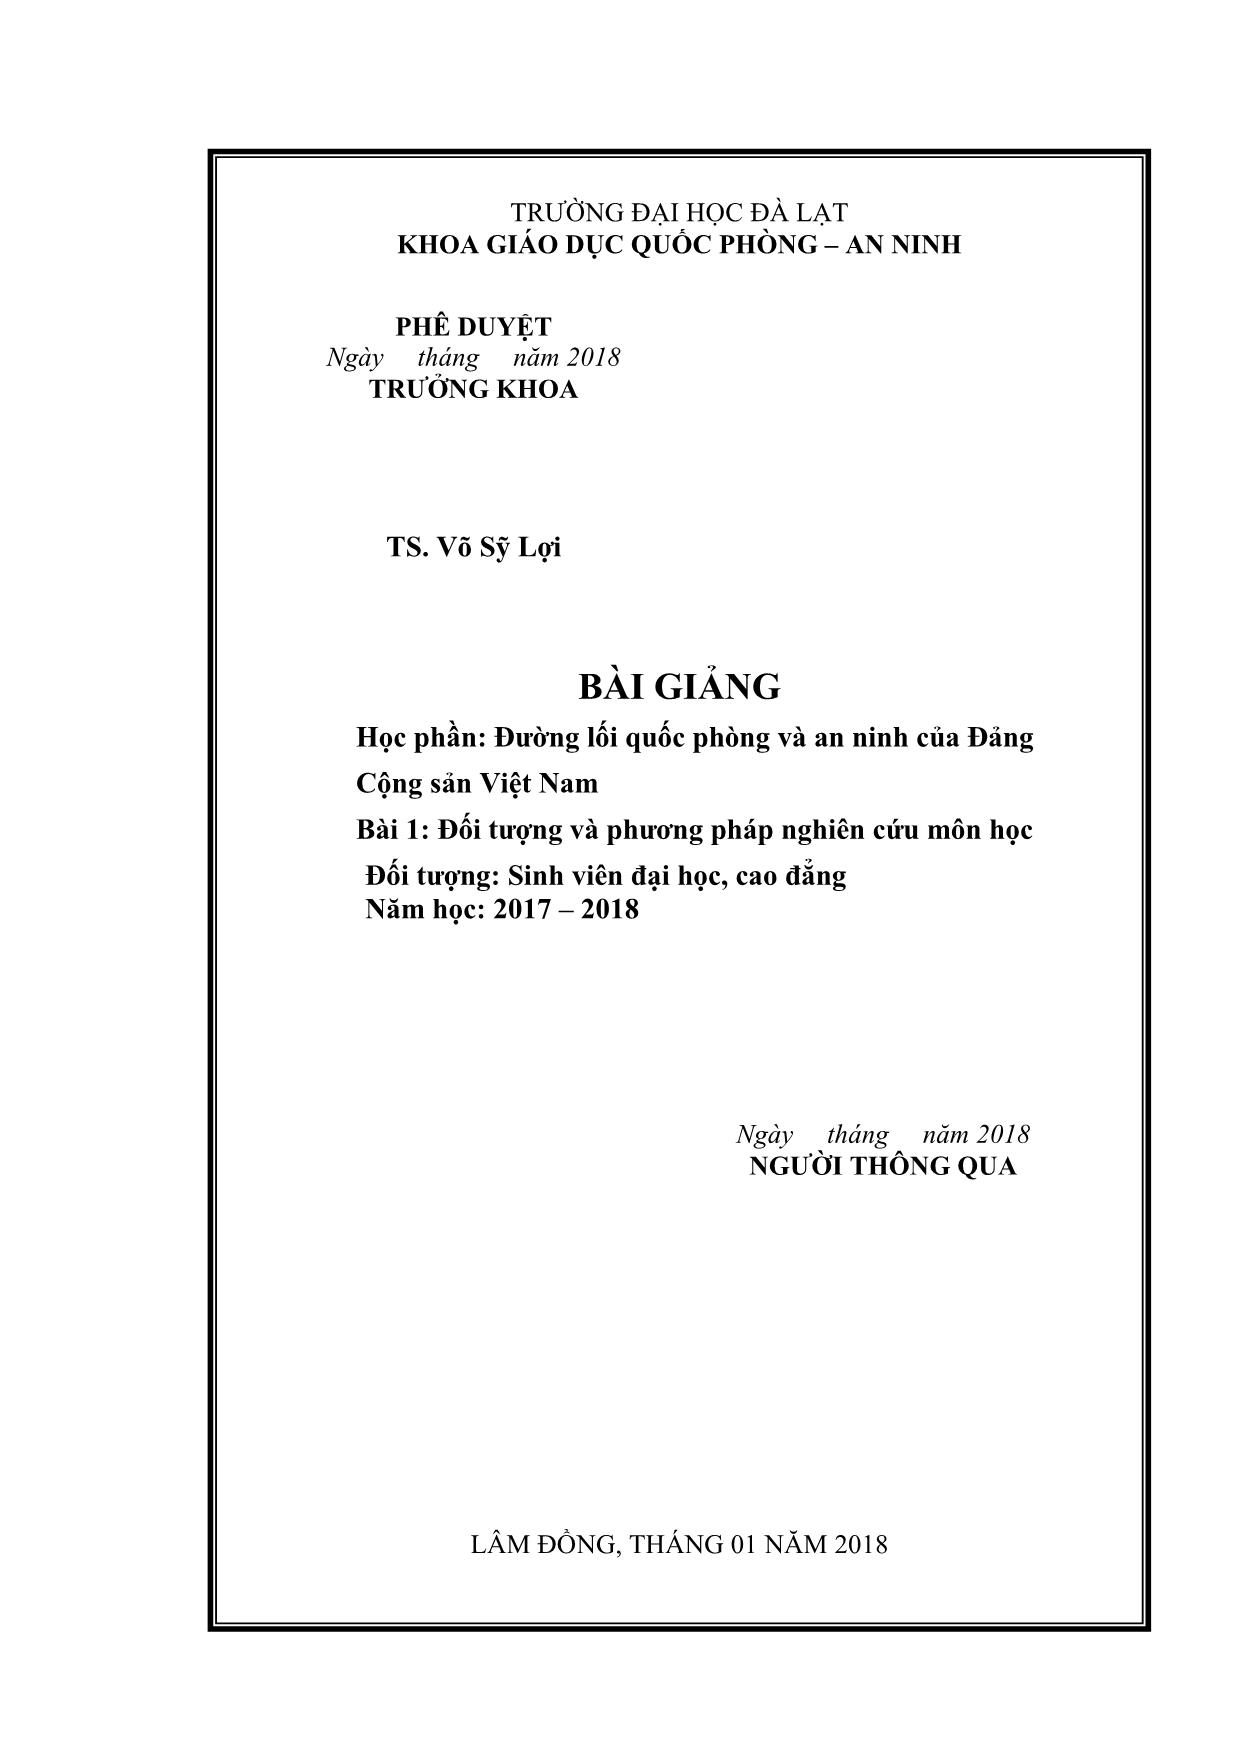 Giáo trình Đường lối quốc phòng và an ninh của Đảng Cộng sản Việt Nam - Bài 1: Đối tượng và phương pháp nghiên cứu môn học trang 2